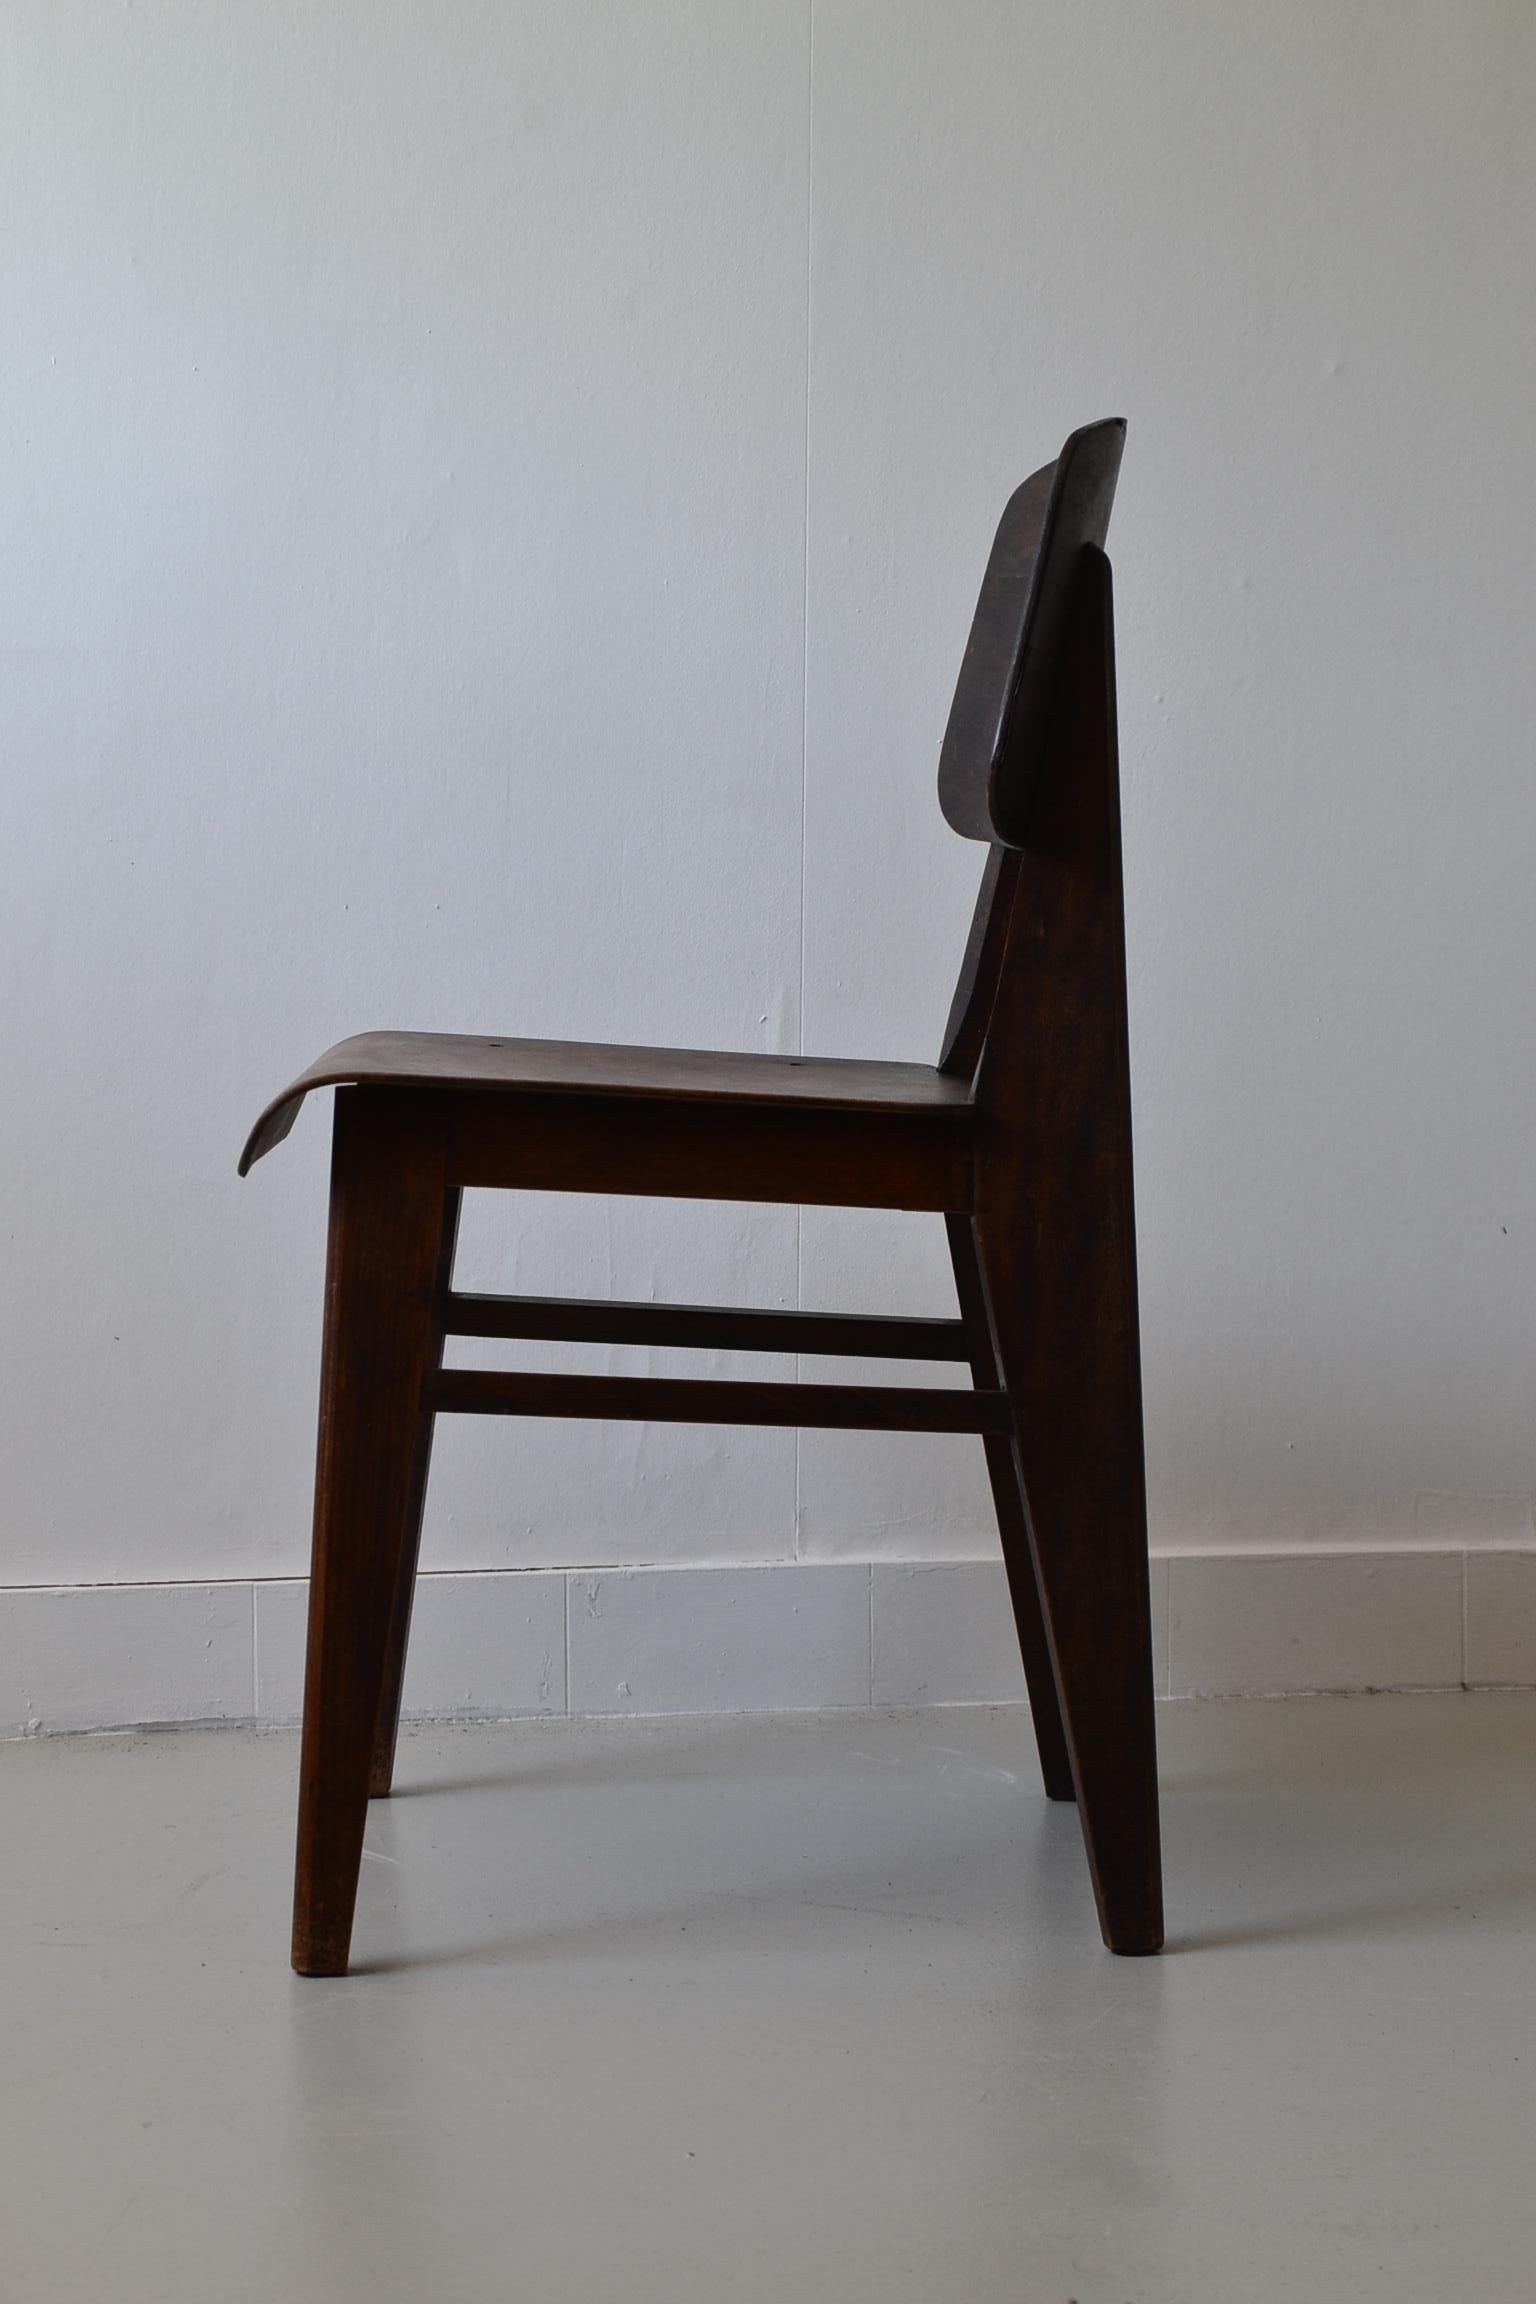 French Jean Prouvé, Tout Bois Chair, 1941